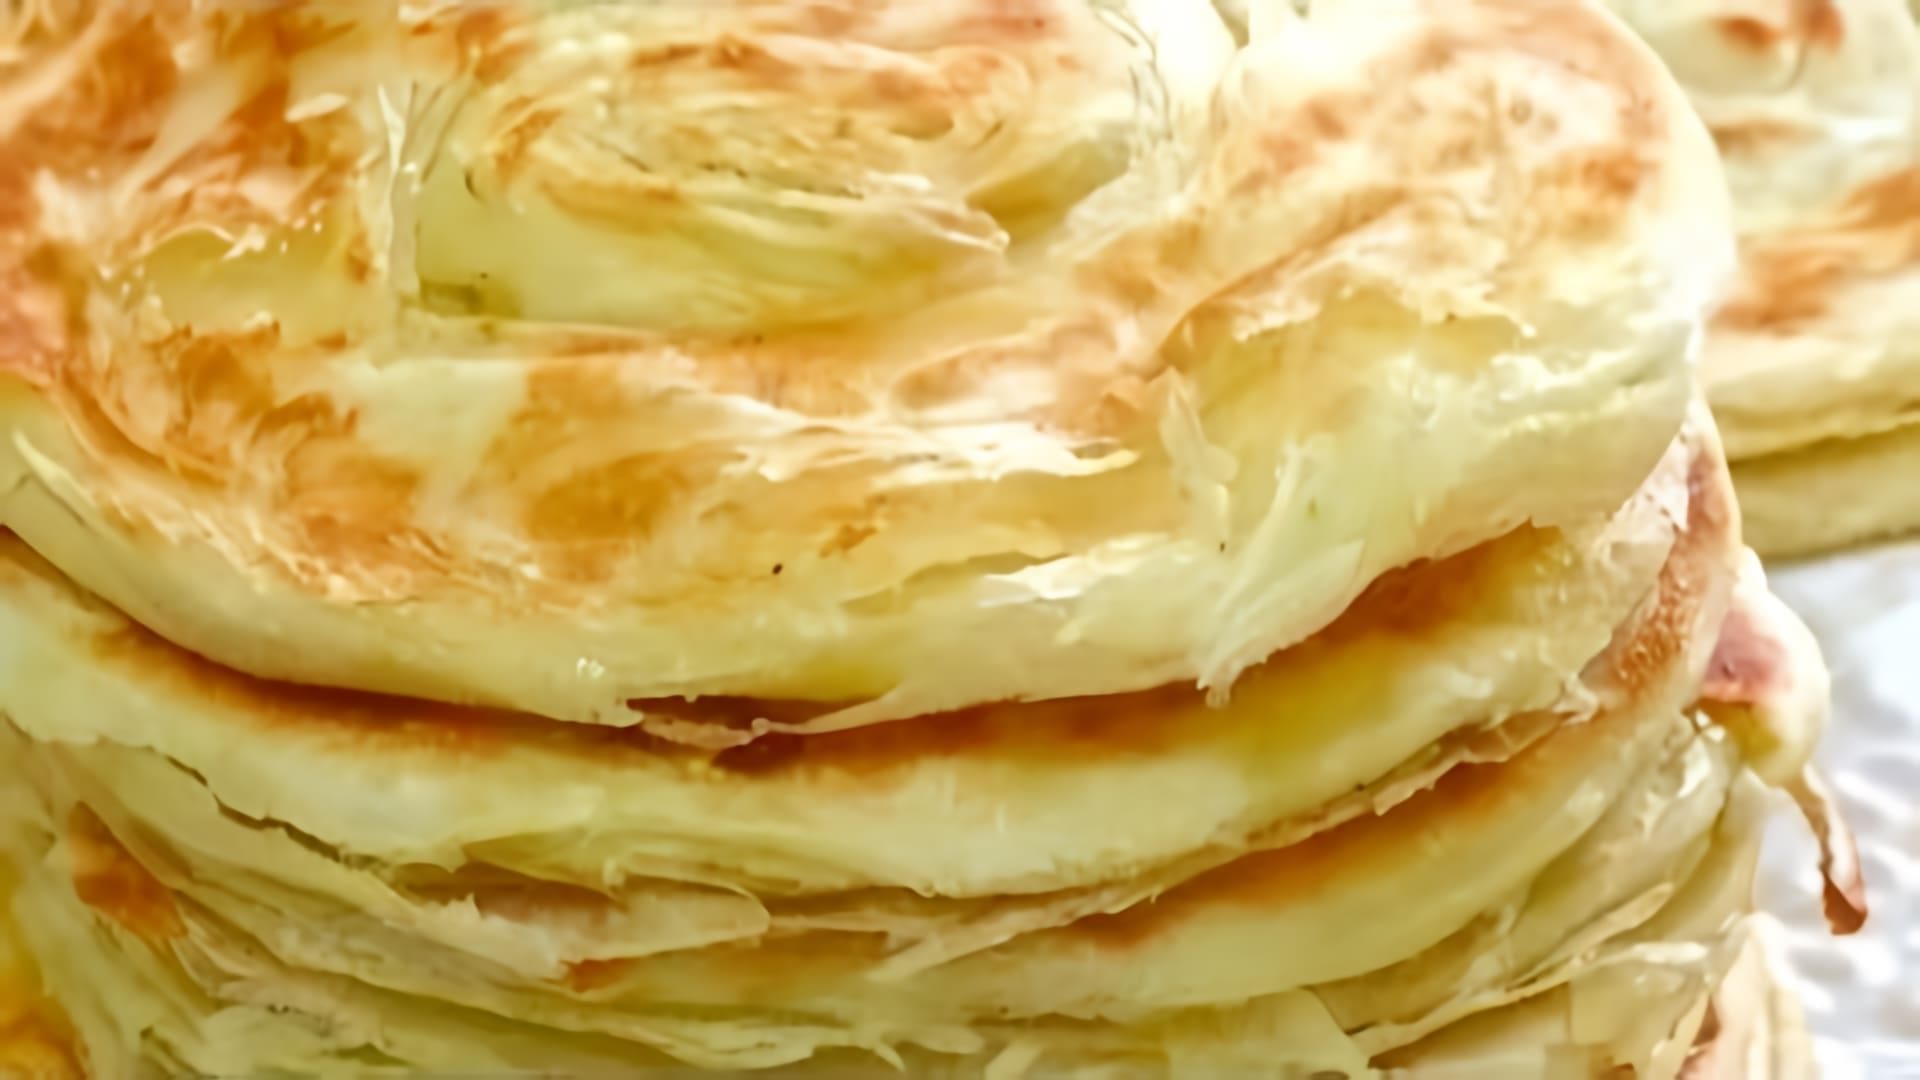 Узбекская слоеная лепешка катлама на сковороде - это традиционное блюдо узбекской кухни, которое готовится из тонкого теста и начинки из мяса, лука и специй